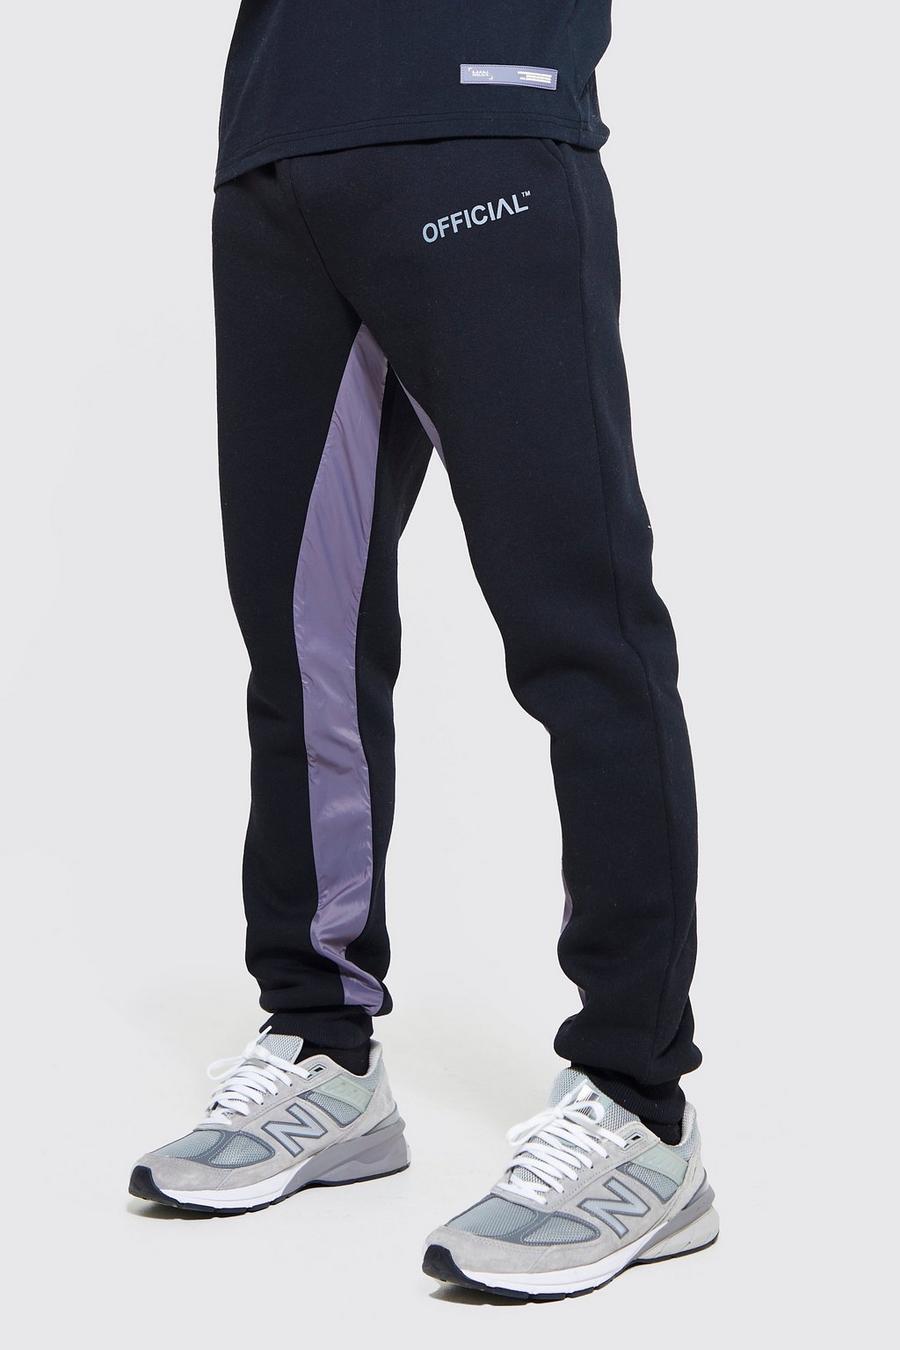 Pantaloni tuta Slim Fit Official in nylon con pannelli, Black negro